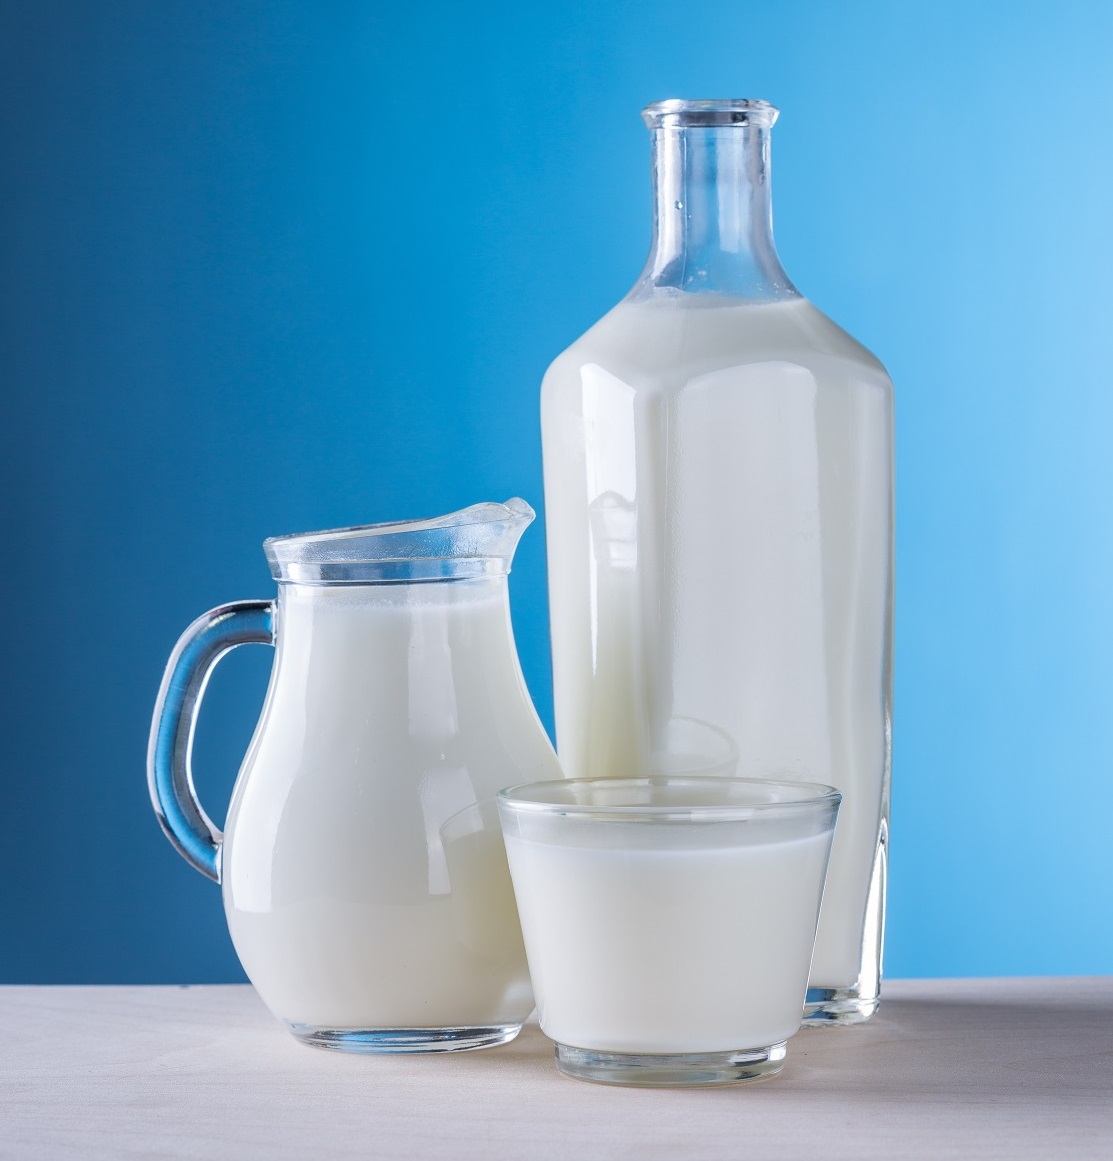 מוצרי חלב: סקירה תזונתית בראי הרפואה הסינית